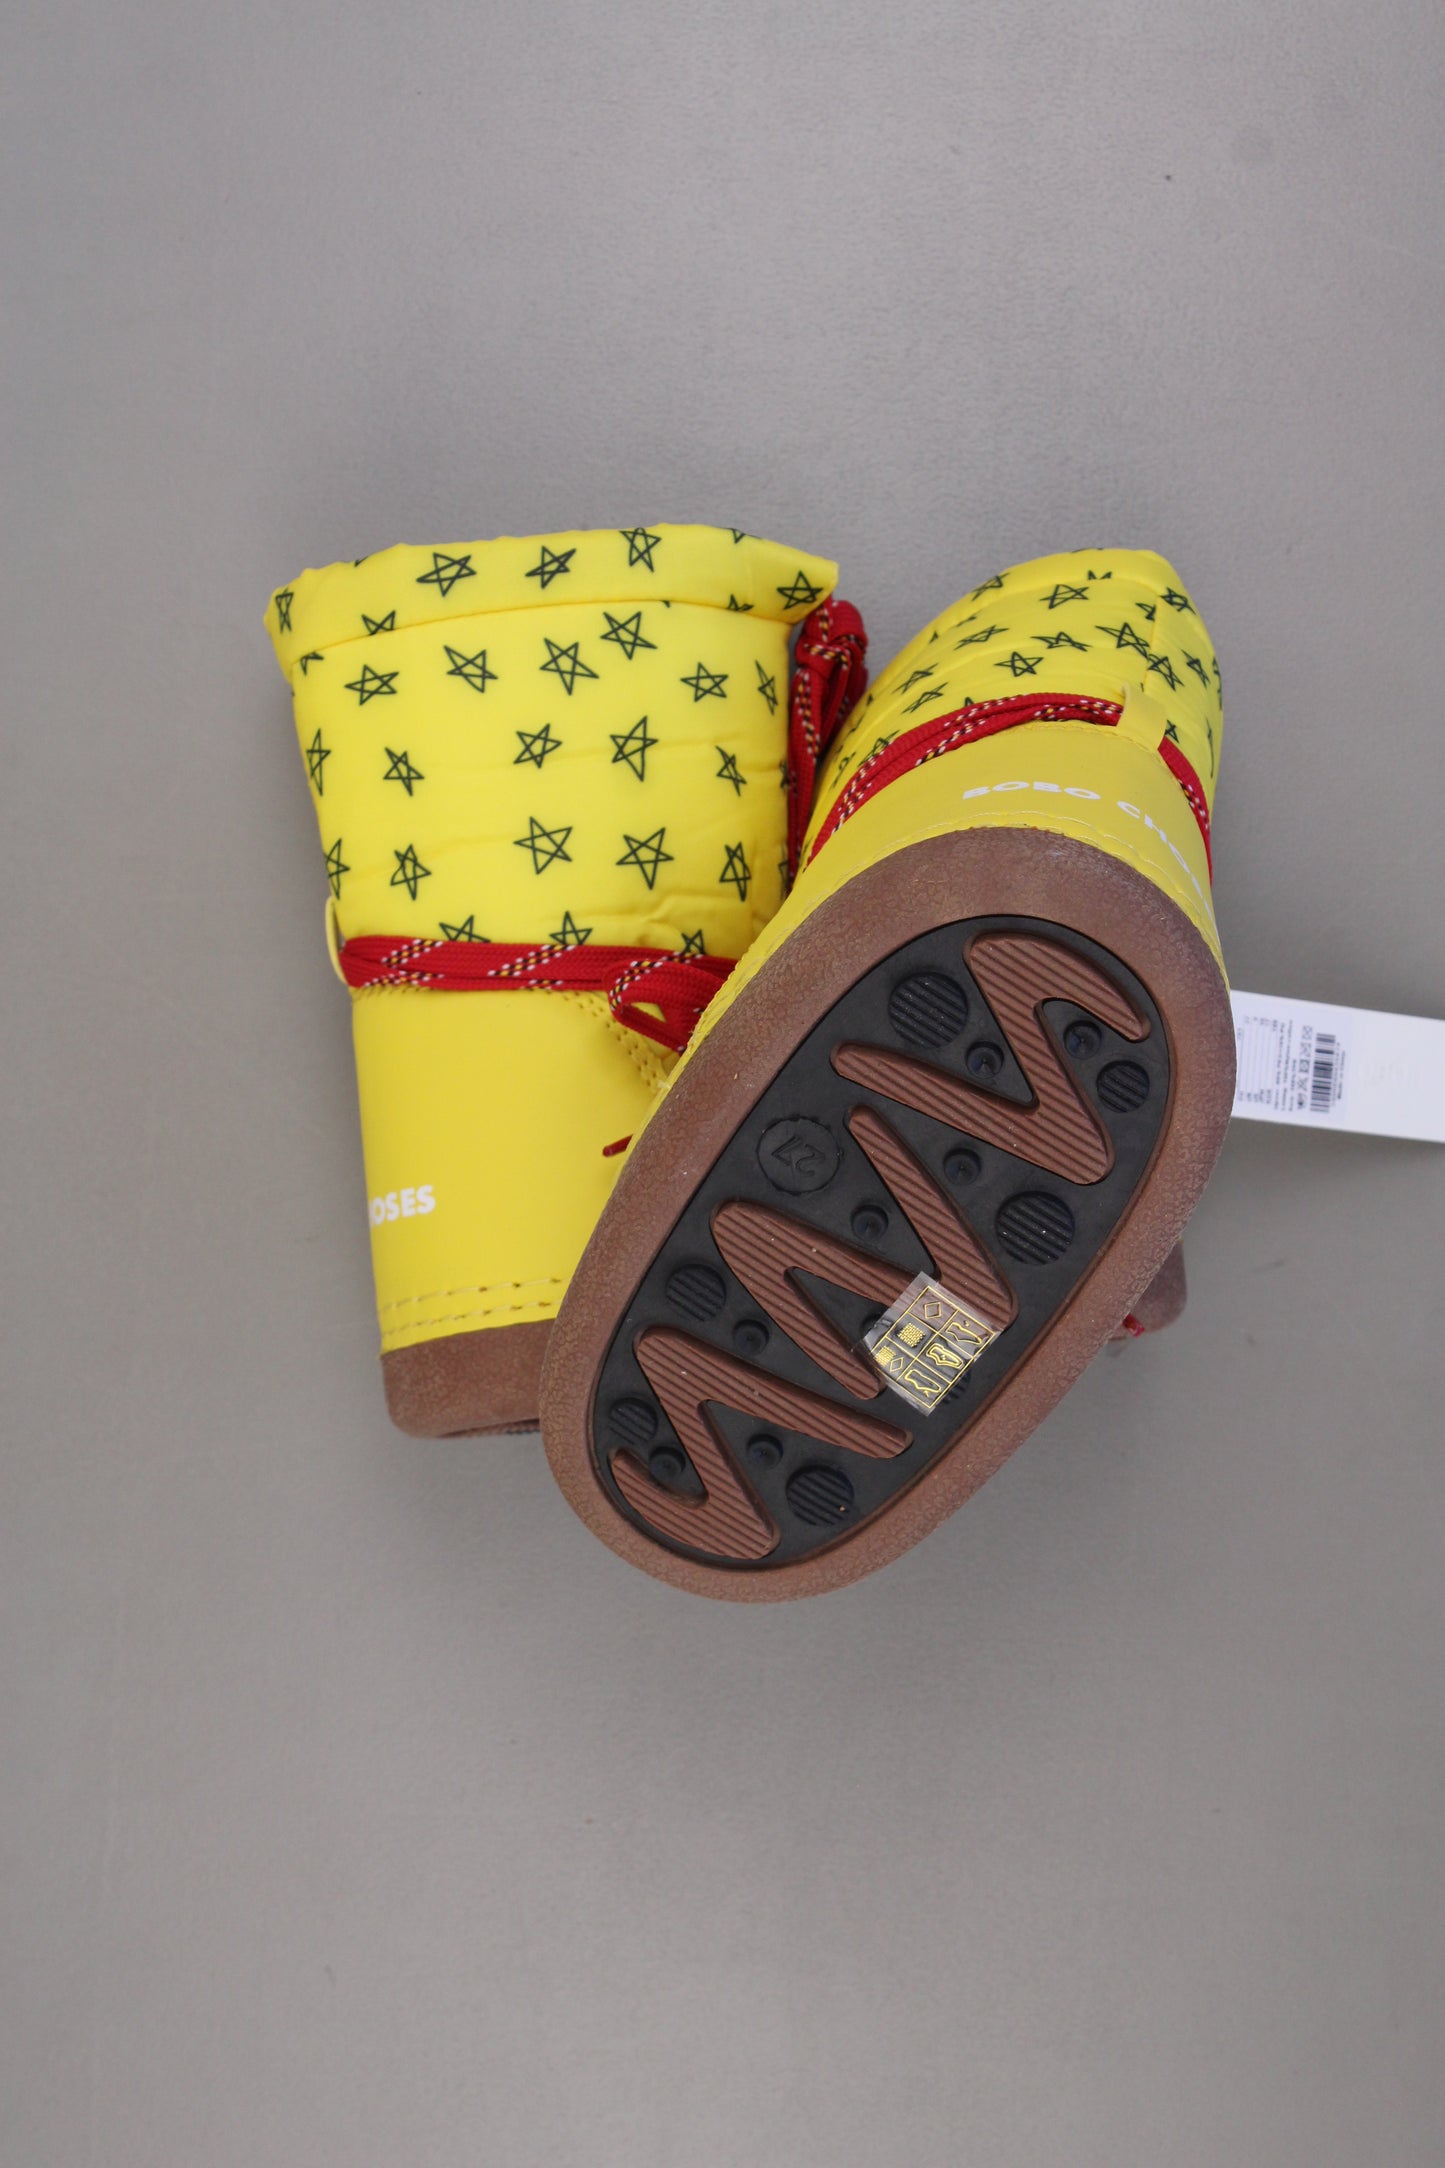 Bobo Choses Kinder Schneestiefel Stiefel gelb Größe 27 neu mit Etikett